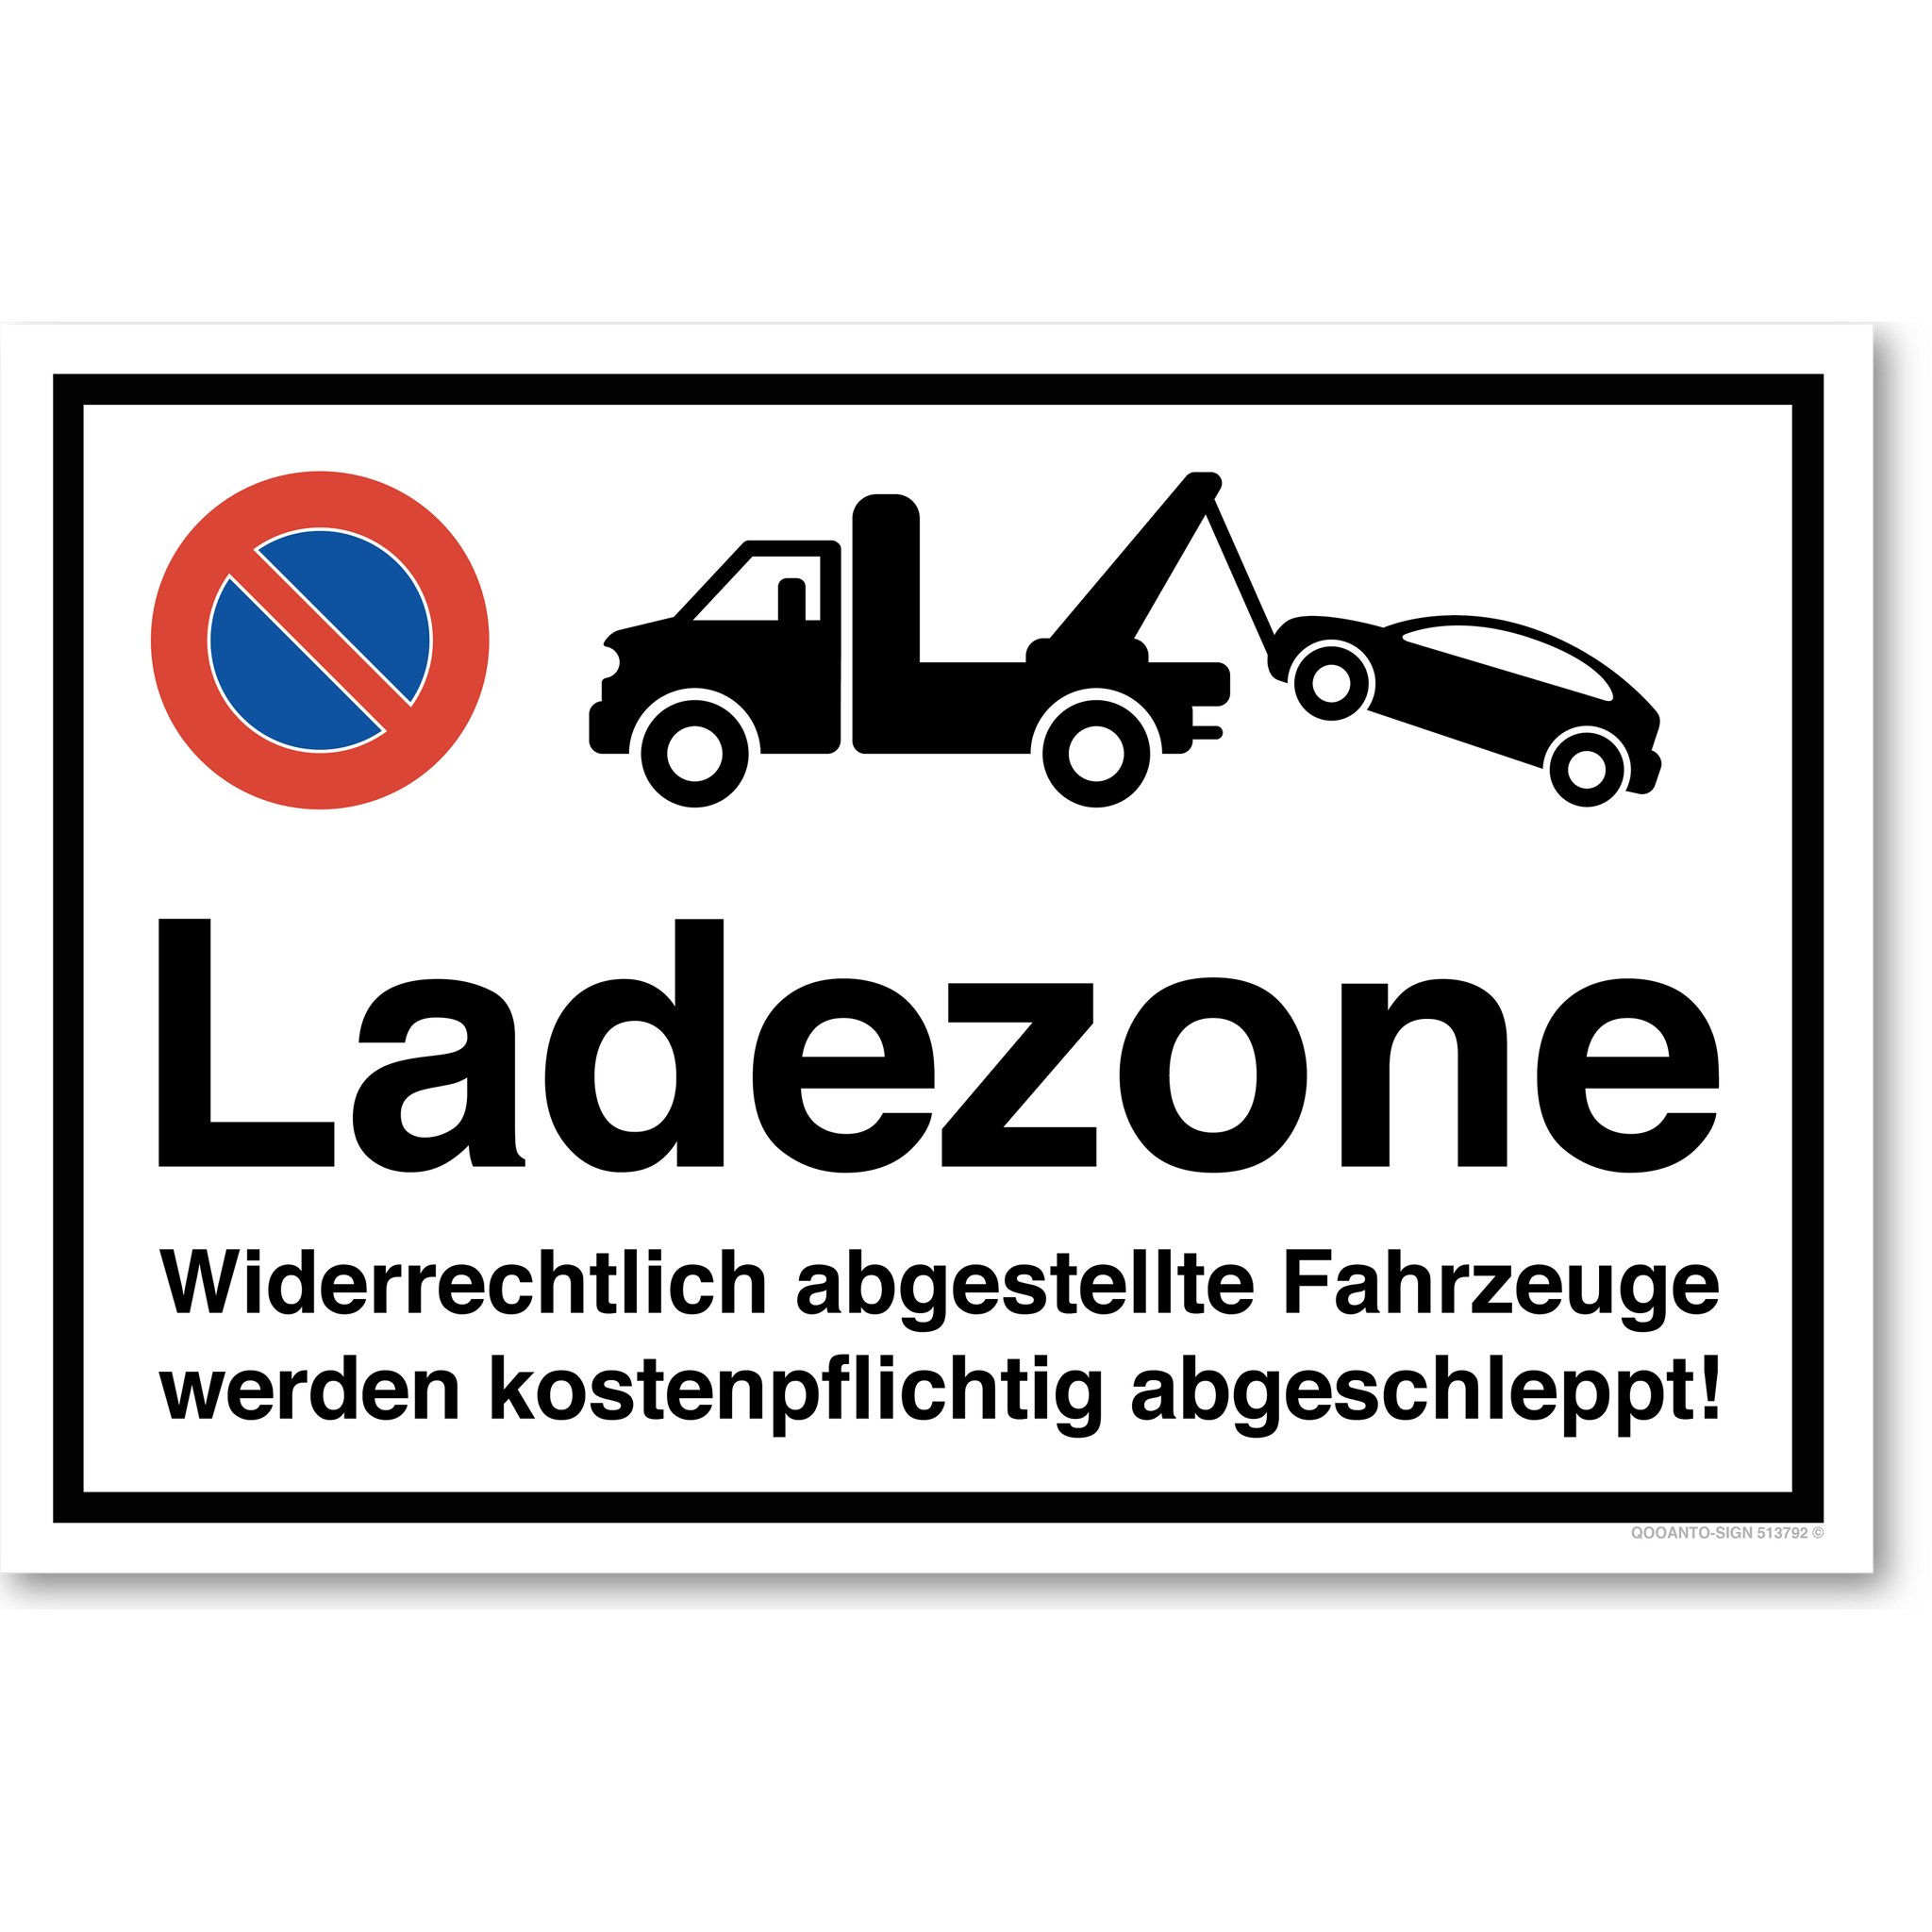 Ladezone - Widerrechtlich abgestellte Fahrzeuge werden kostenpflichtig abgeschleppt - Parkverbotsschild querformat